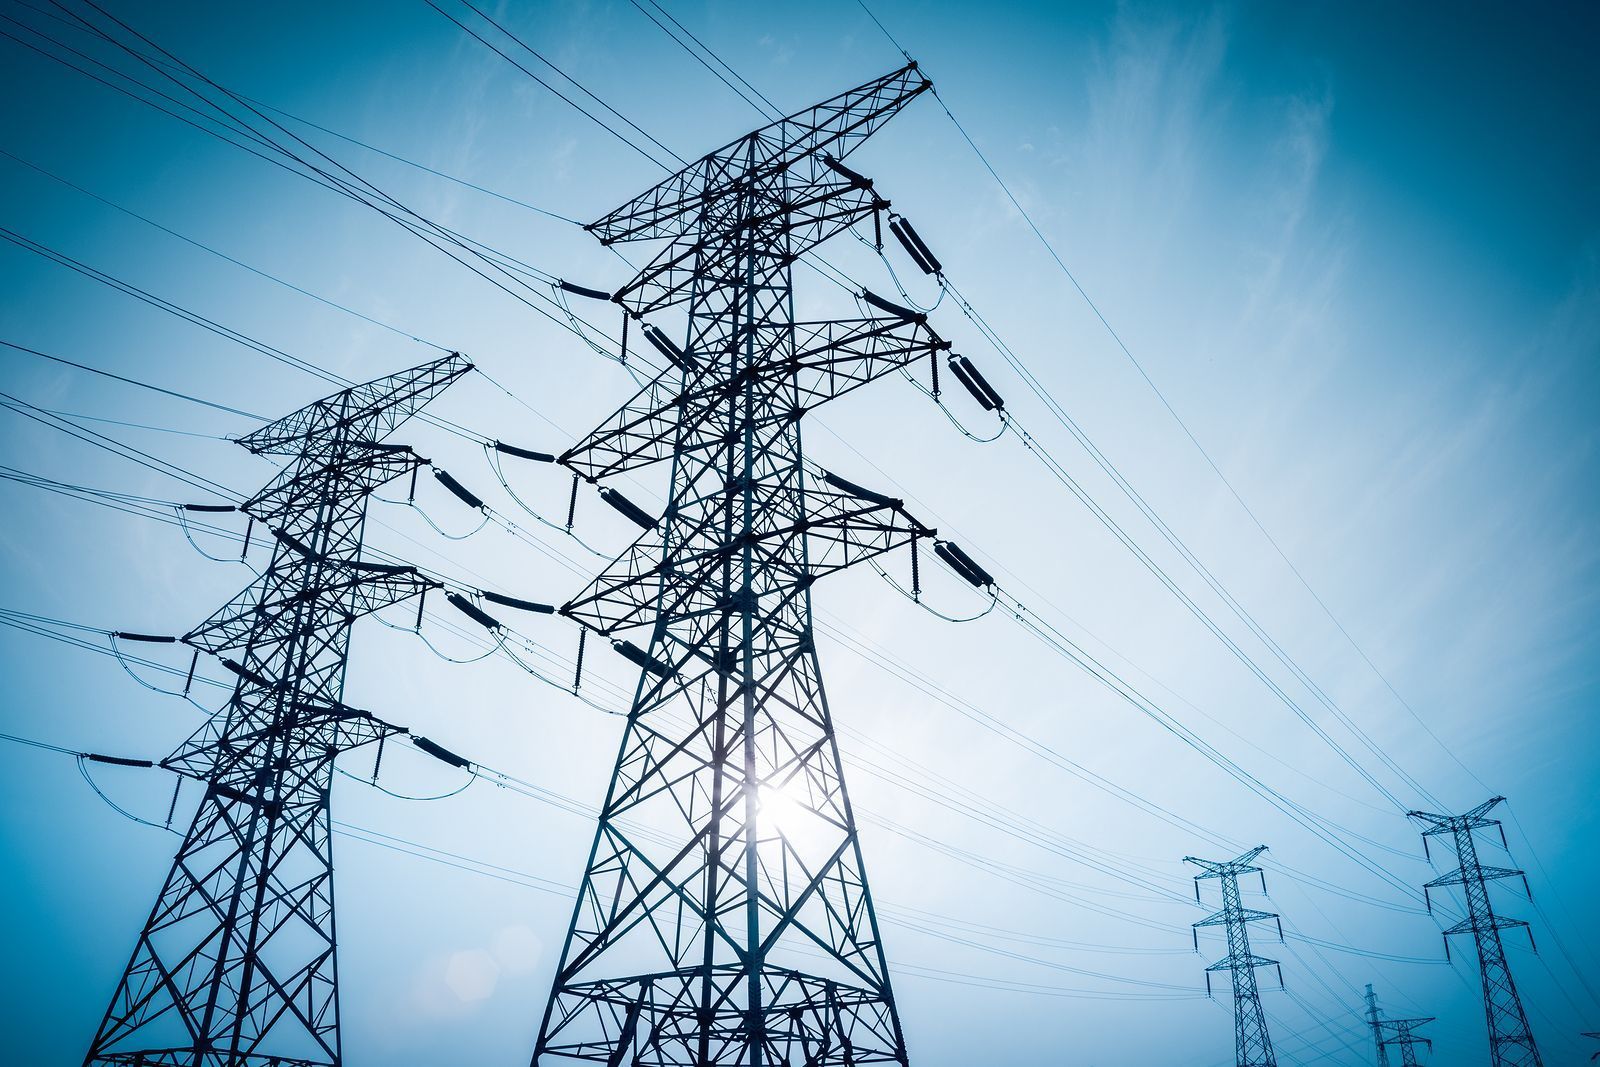 Precio de electricidad subió 18.8% en la primera quincena de octubre, reporta Inegi